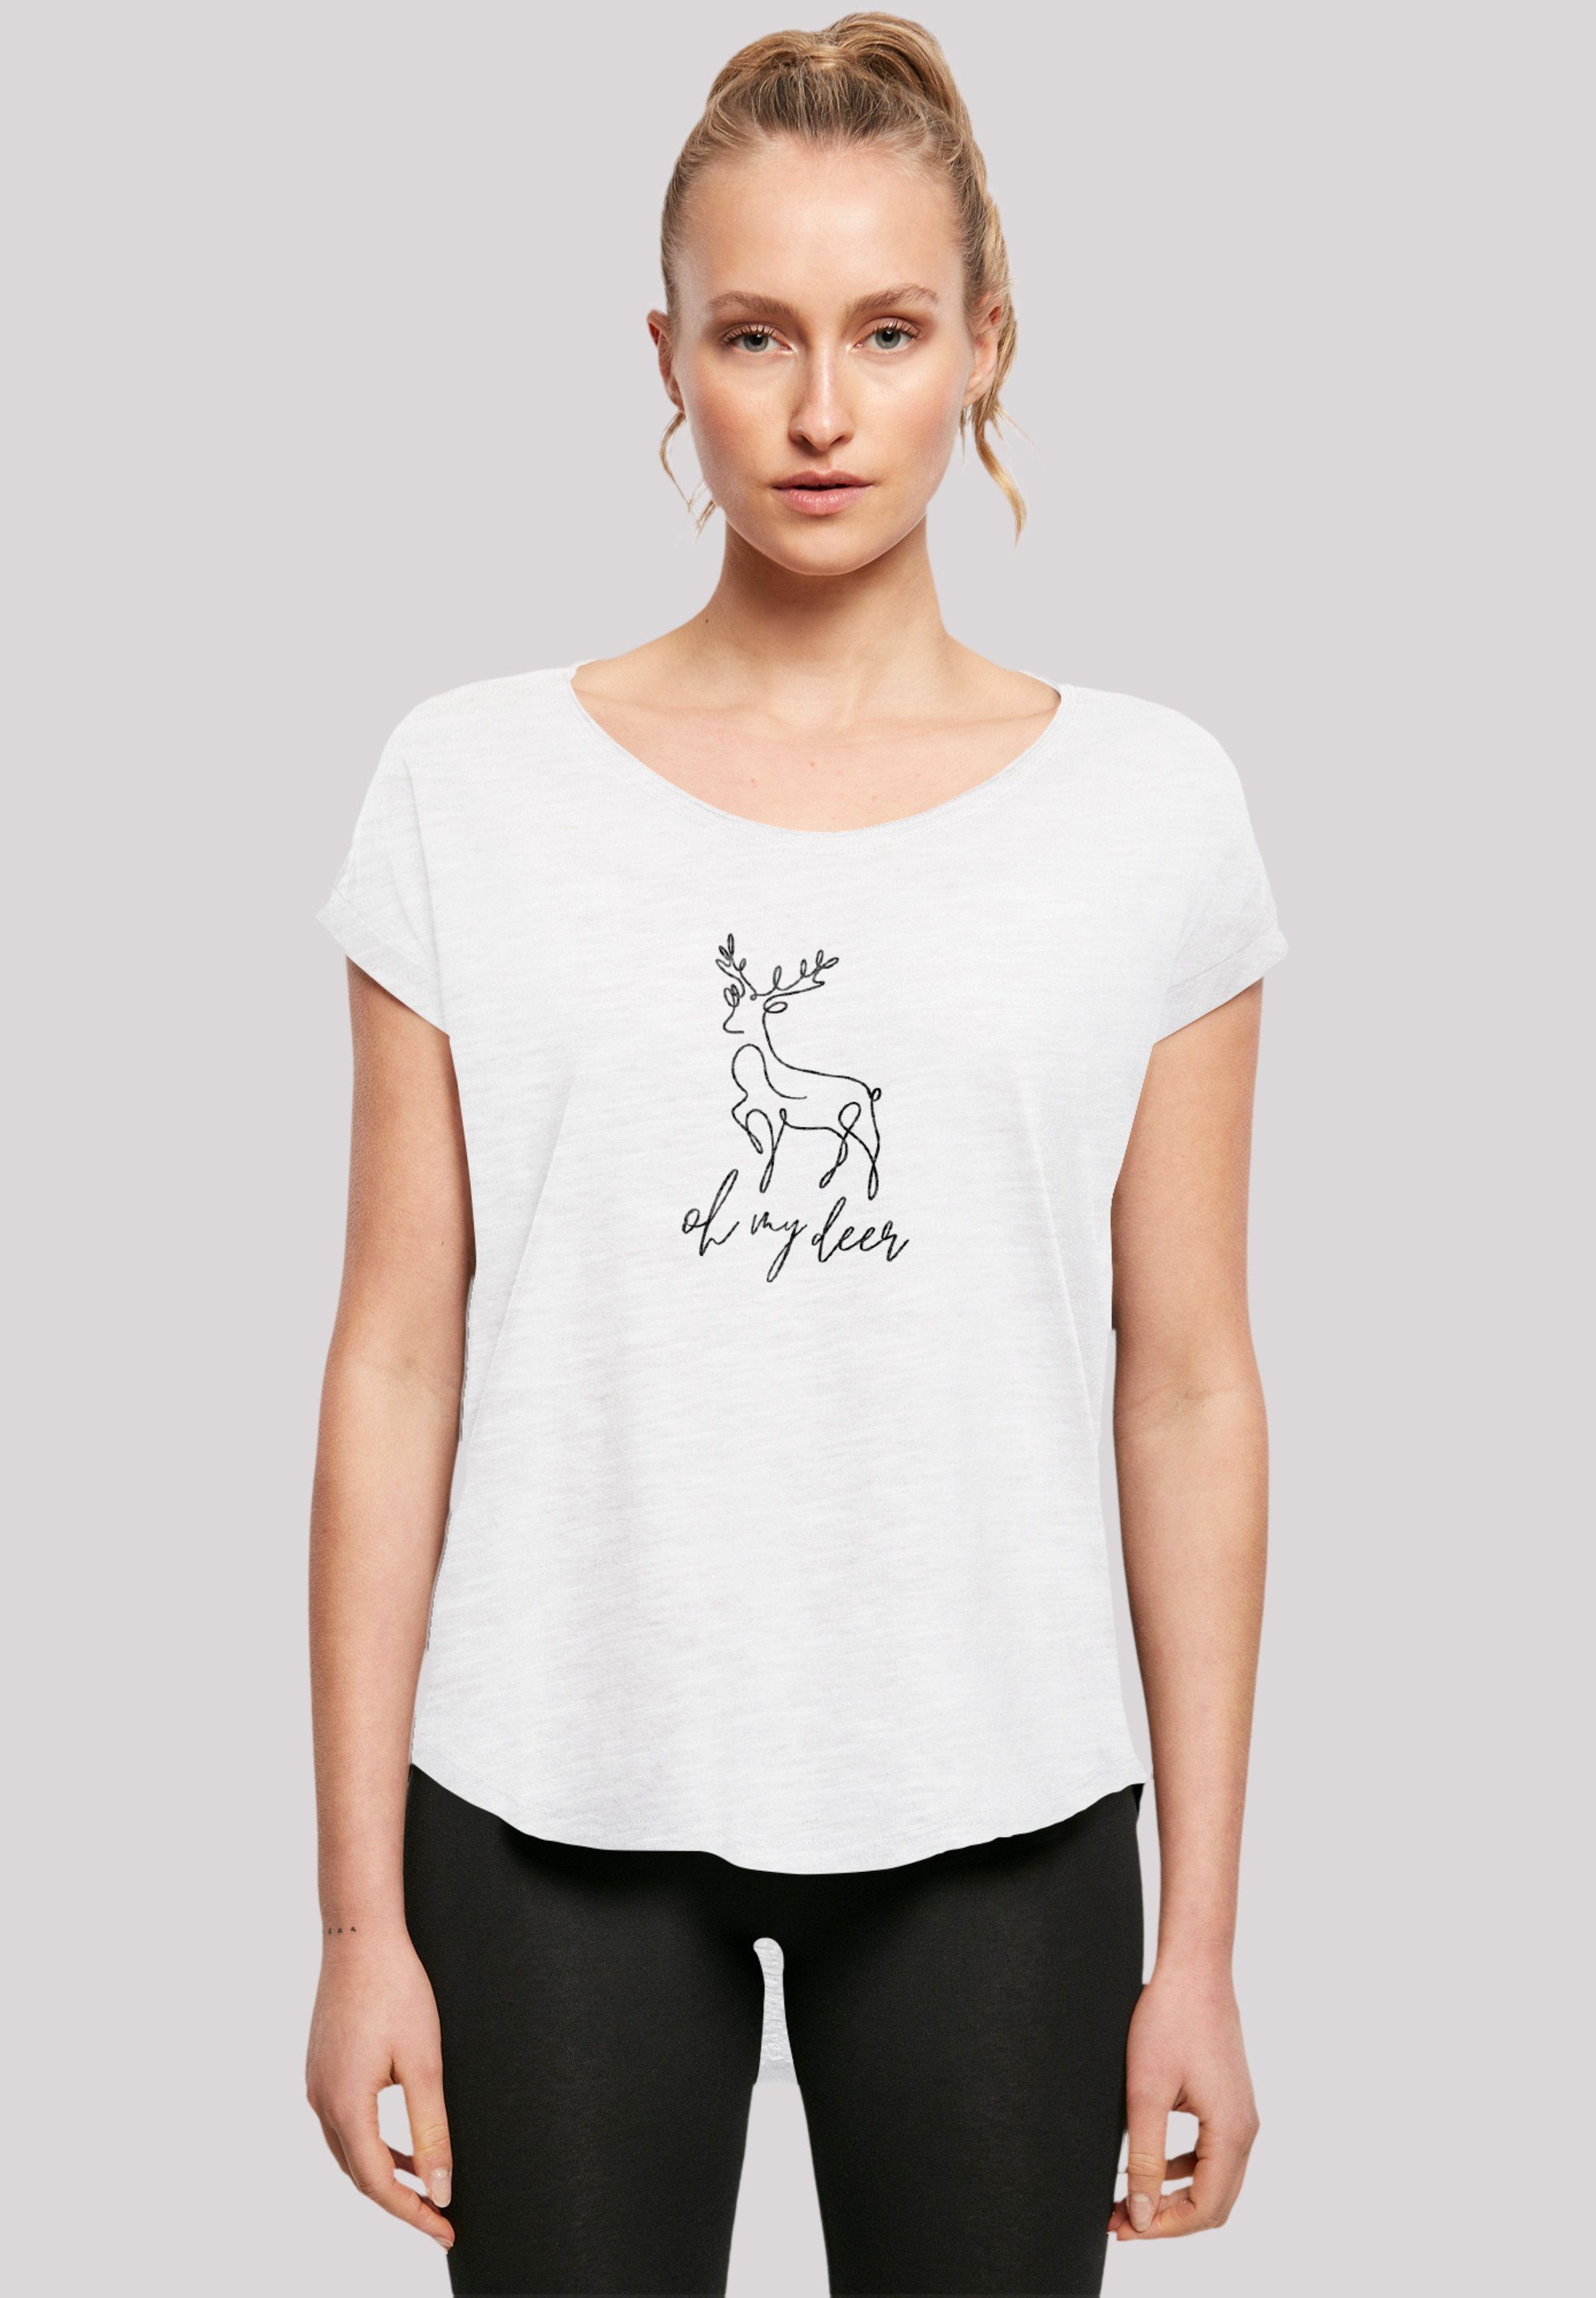 F4NT4STIC T-Shirt Qualität, Hinten Winter T-Shirt Premium geschnittenes Rock-Musik, Deer lang extra Christmas Damen Band